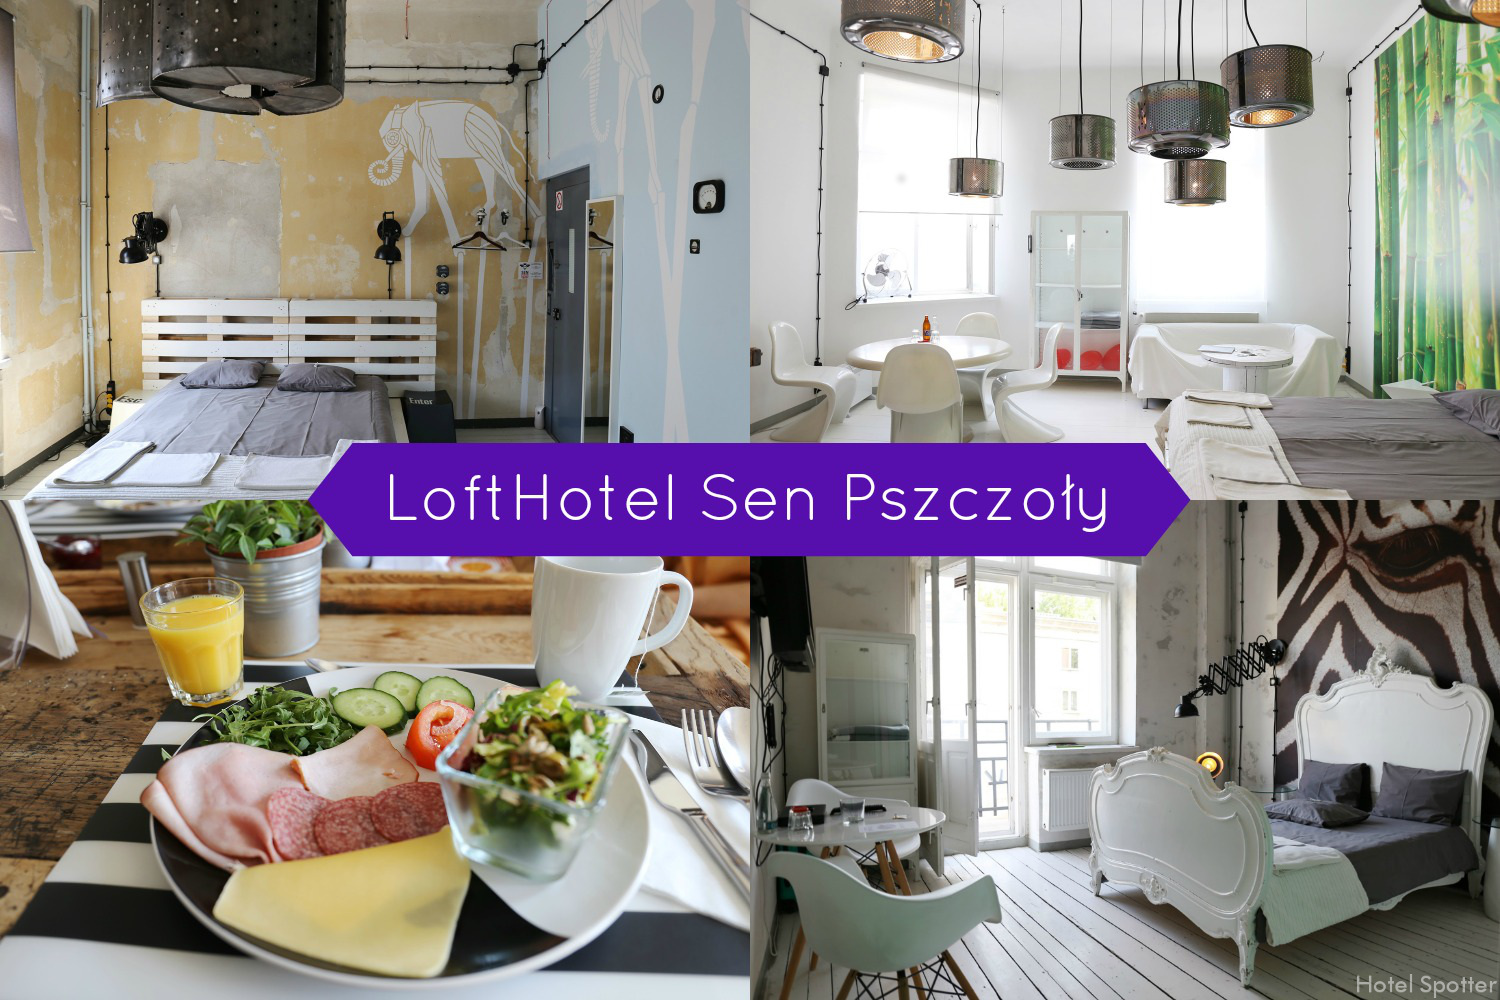 LoftHotel Sen Pszczoły, Warszawa - recenzja hotelu